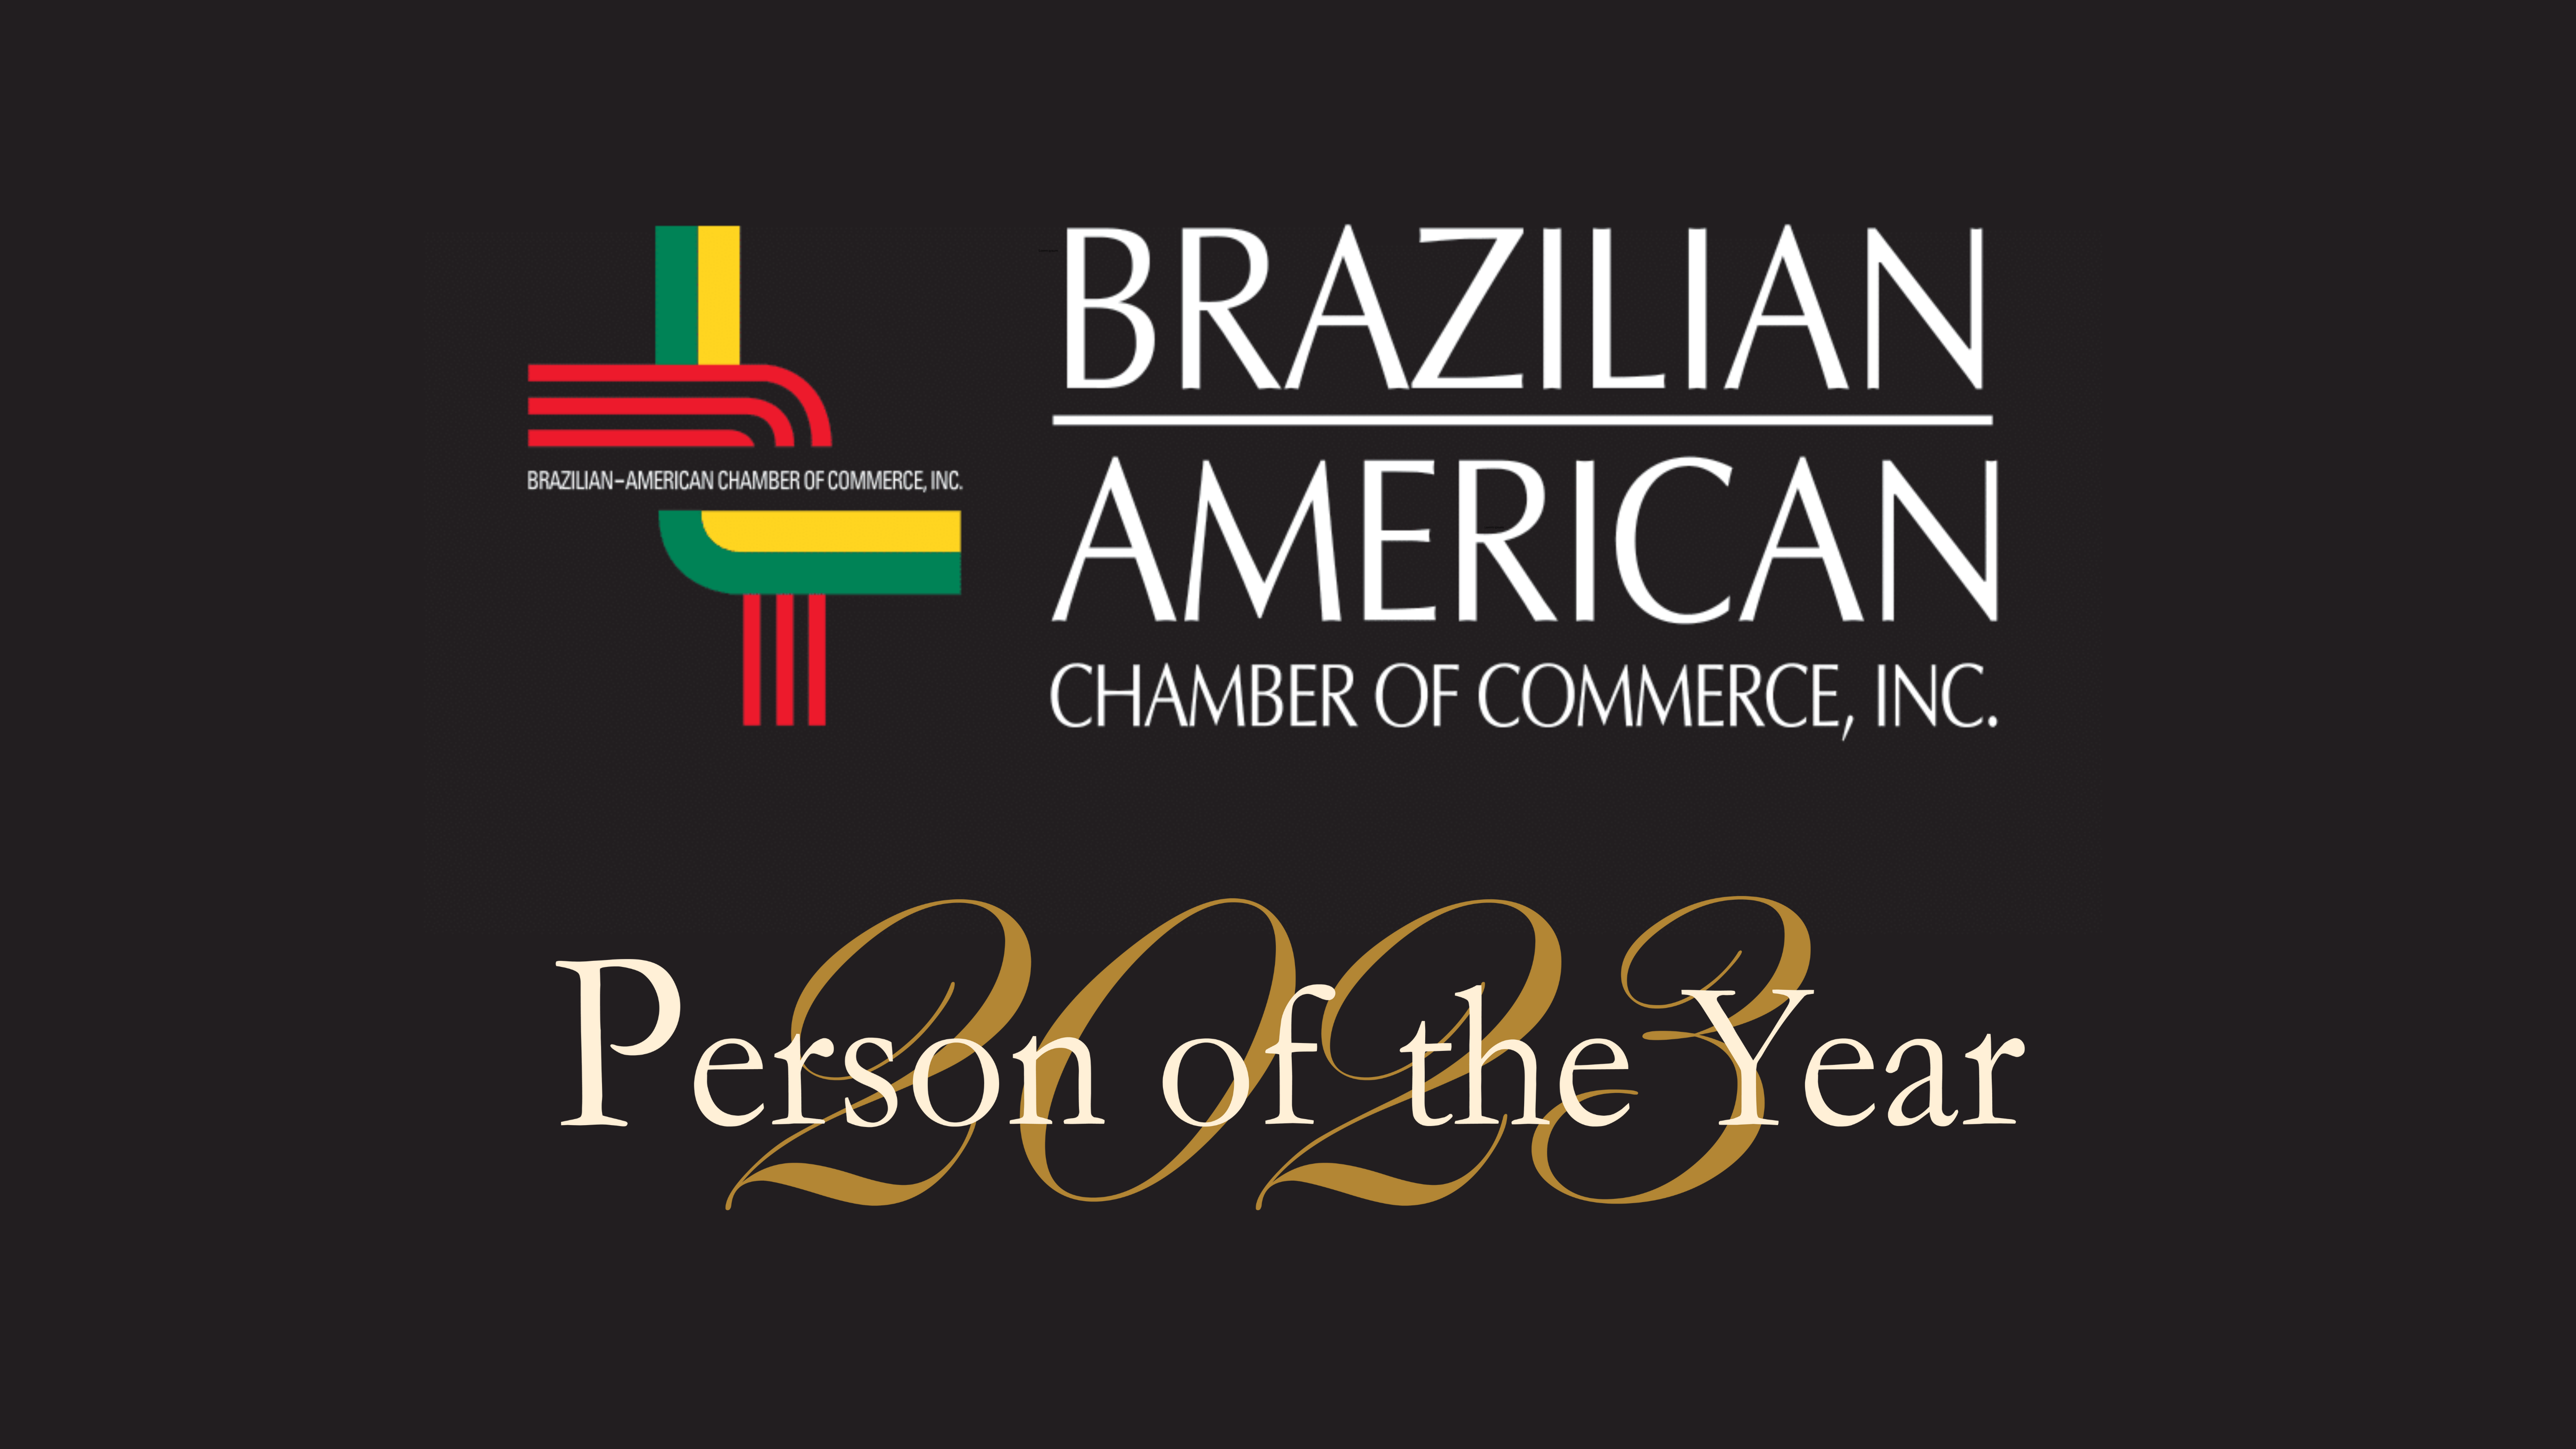 51º Prêmio Personalidade do Ano homenageia líderes do Brasil e EUA